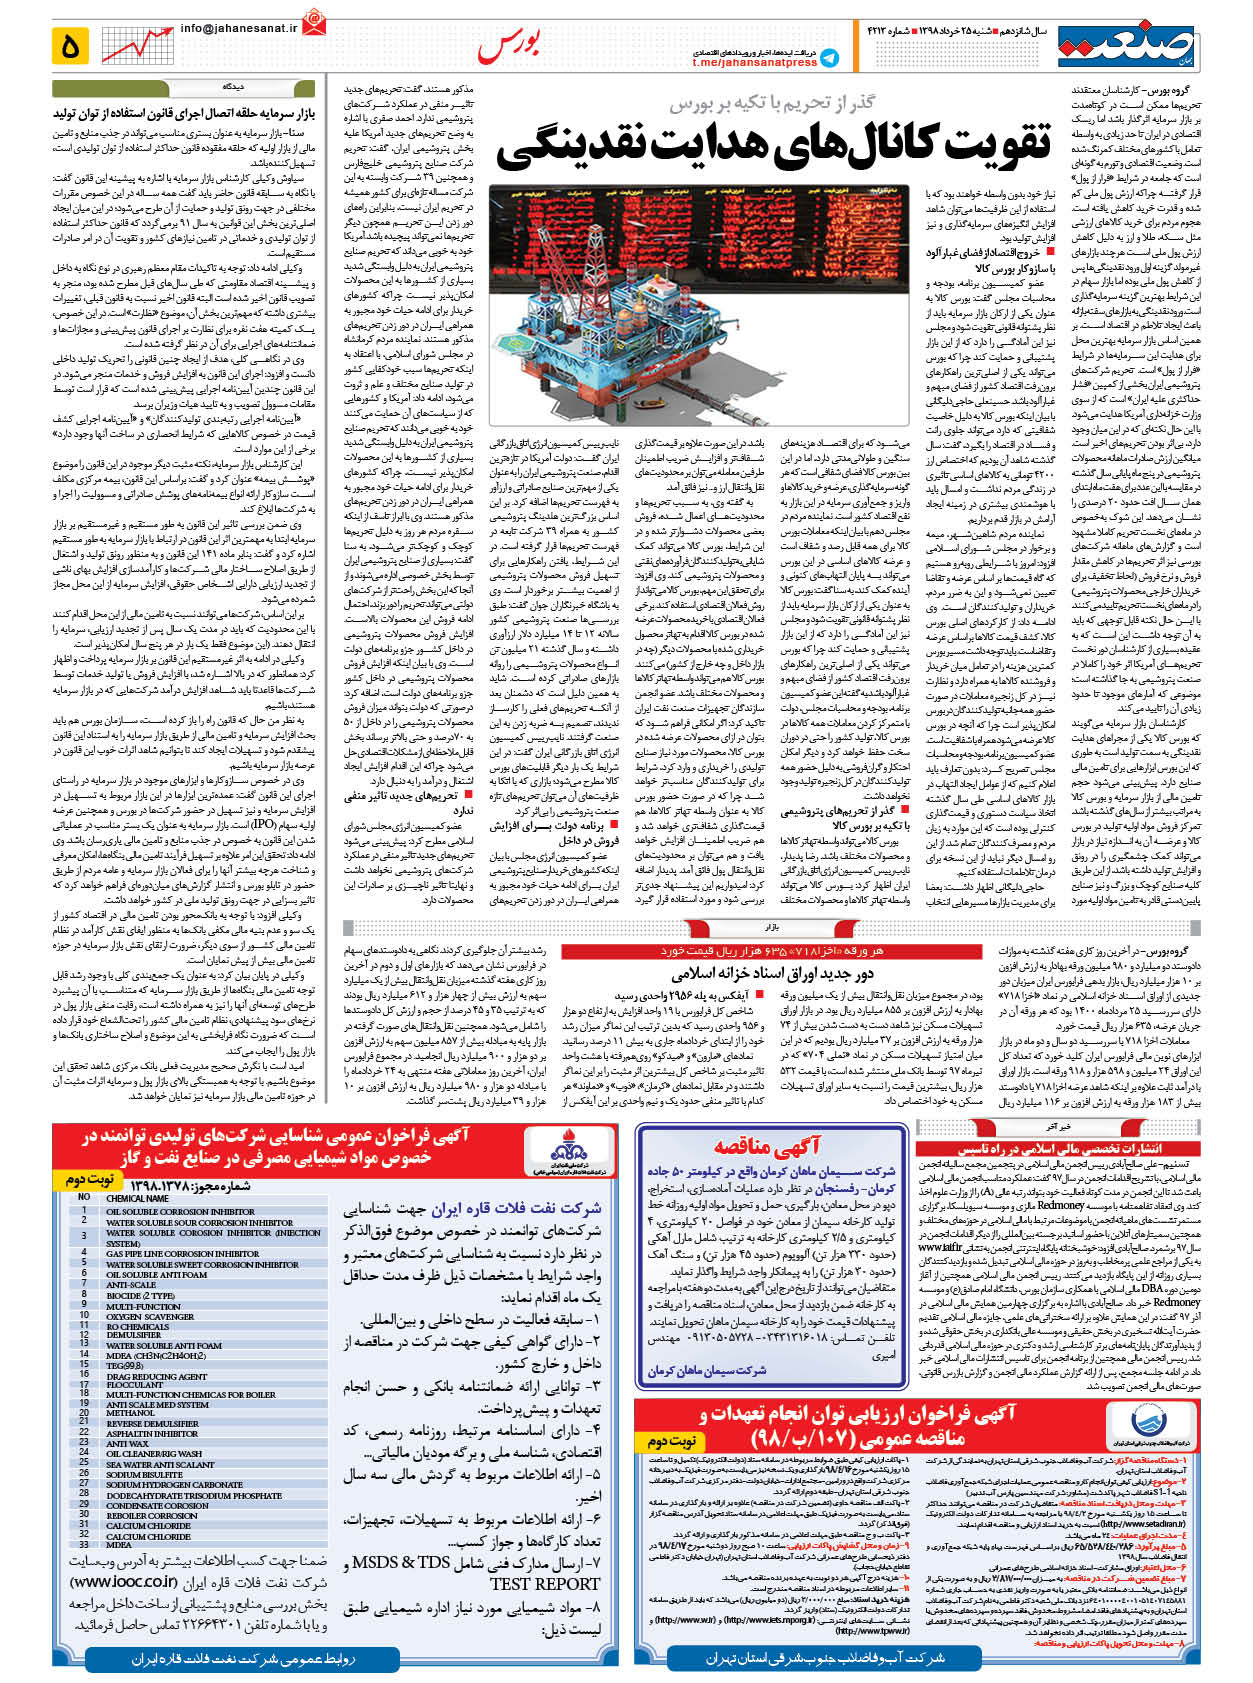 صفحه ۰۵ – ۲۵ خرداد ۹۸